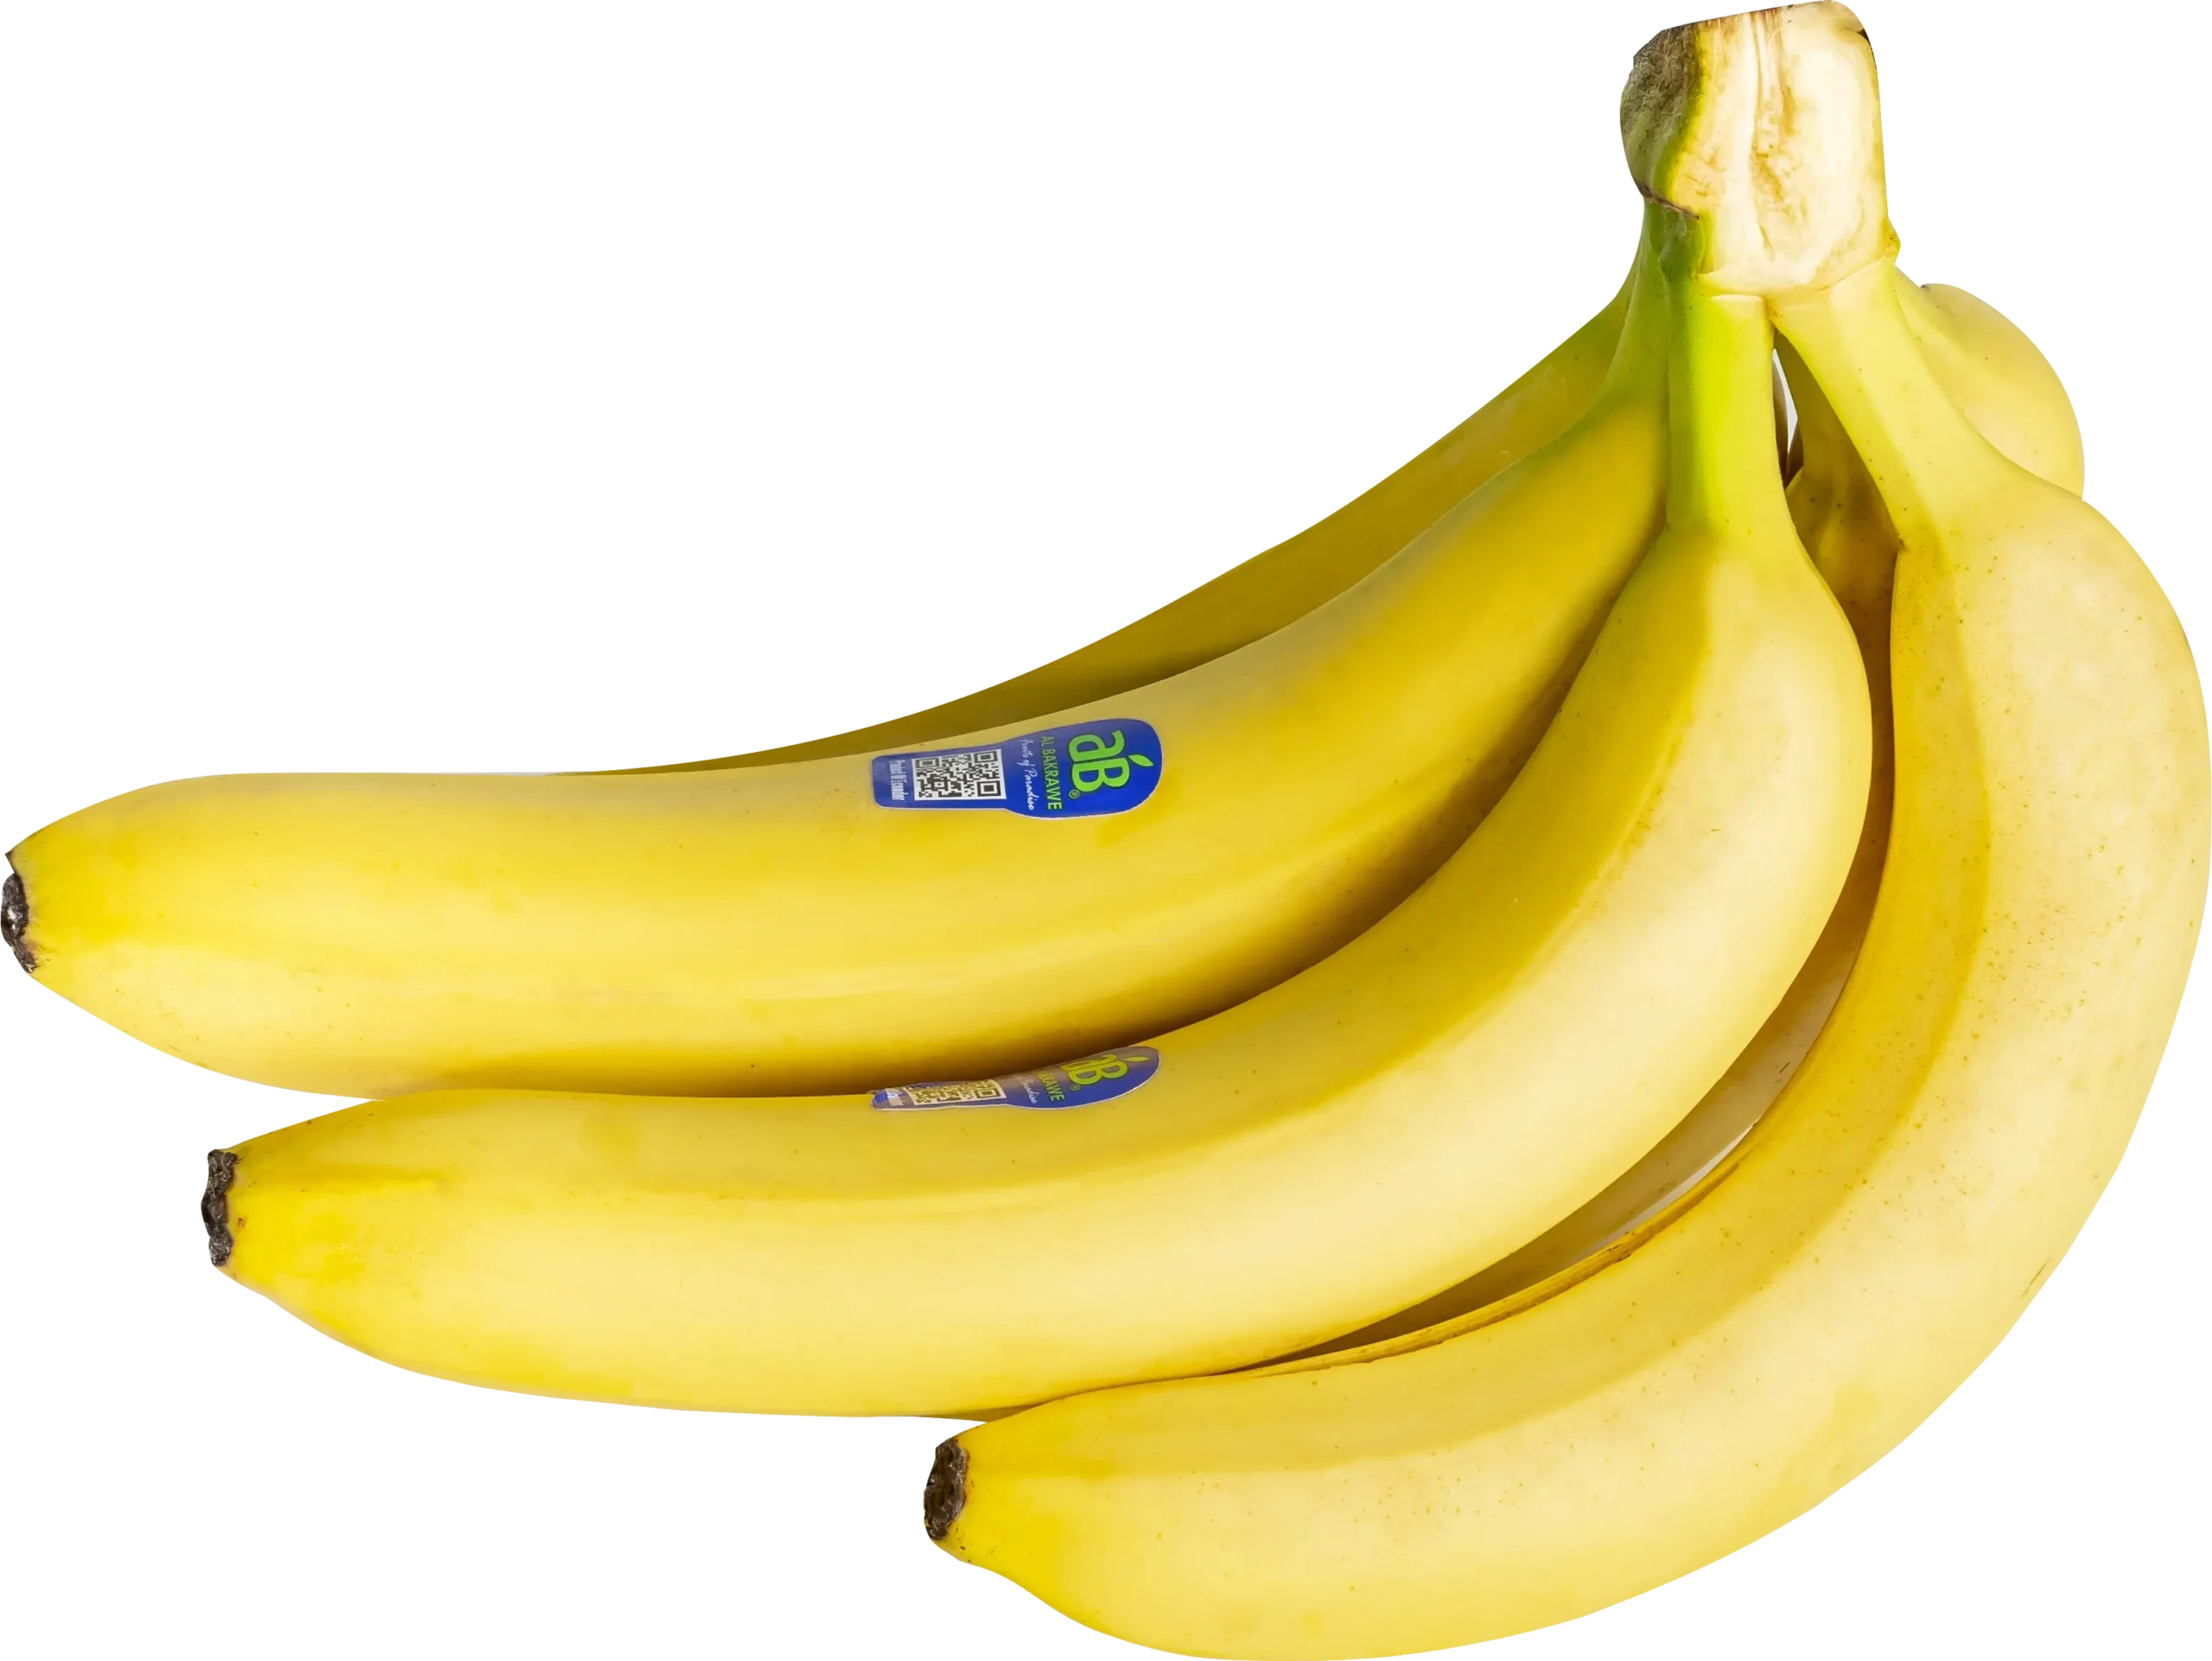 AB Banana